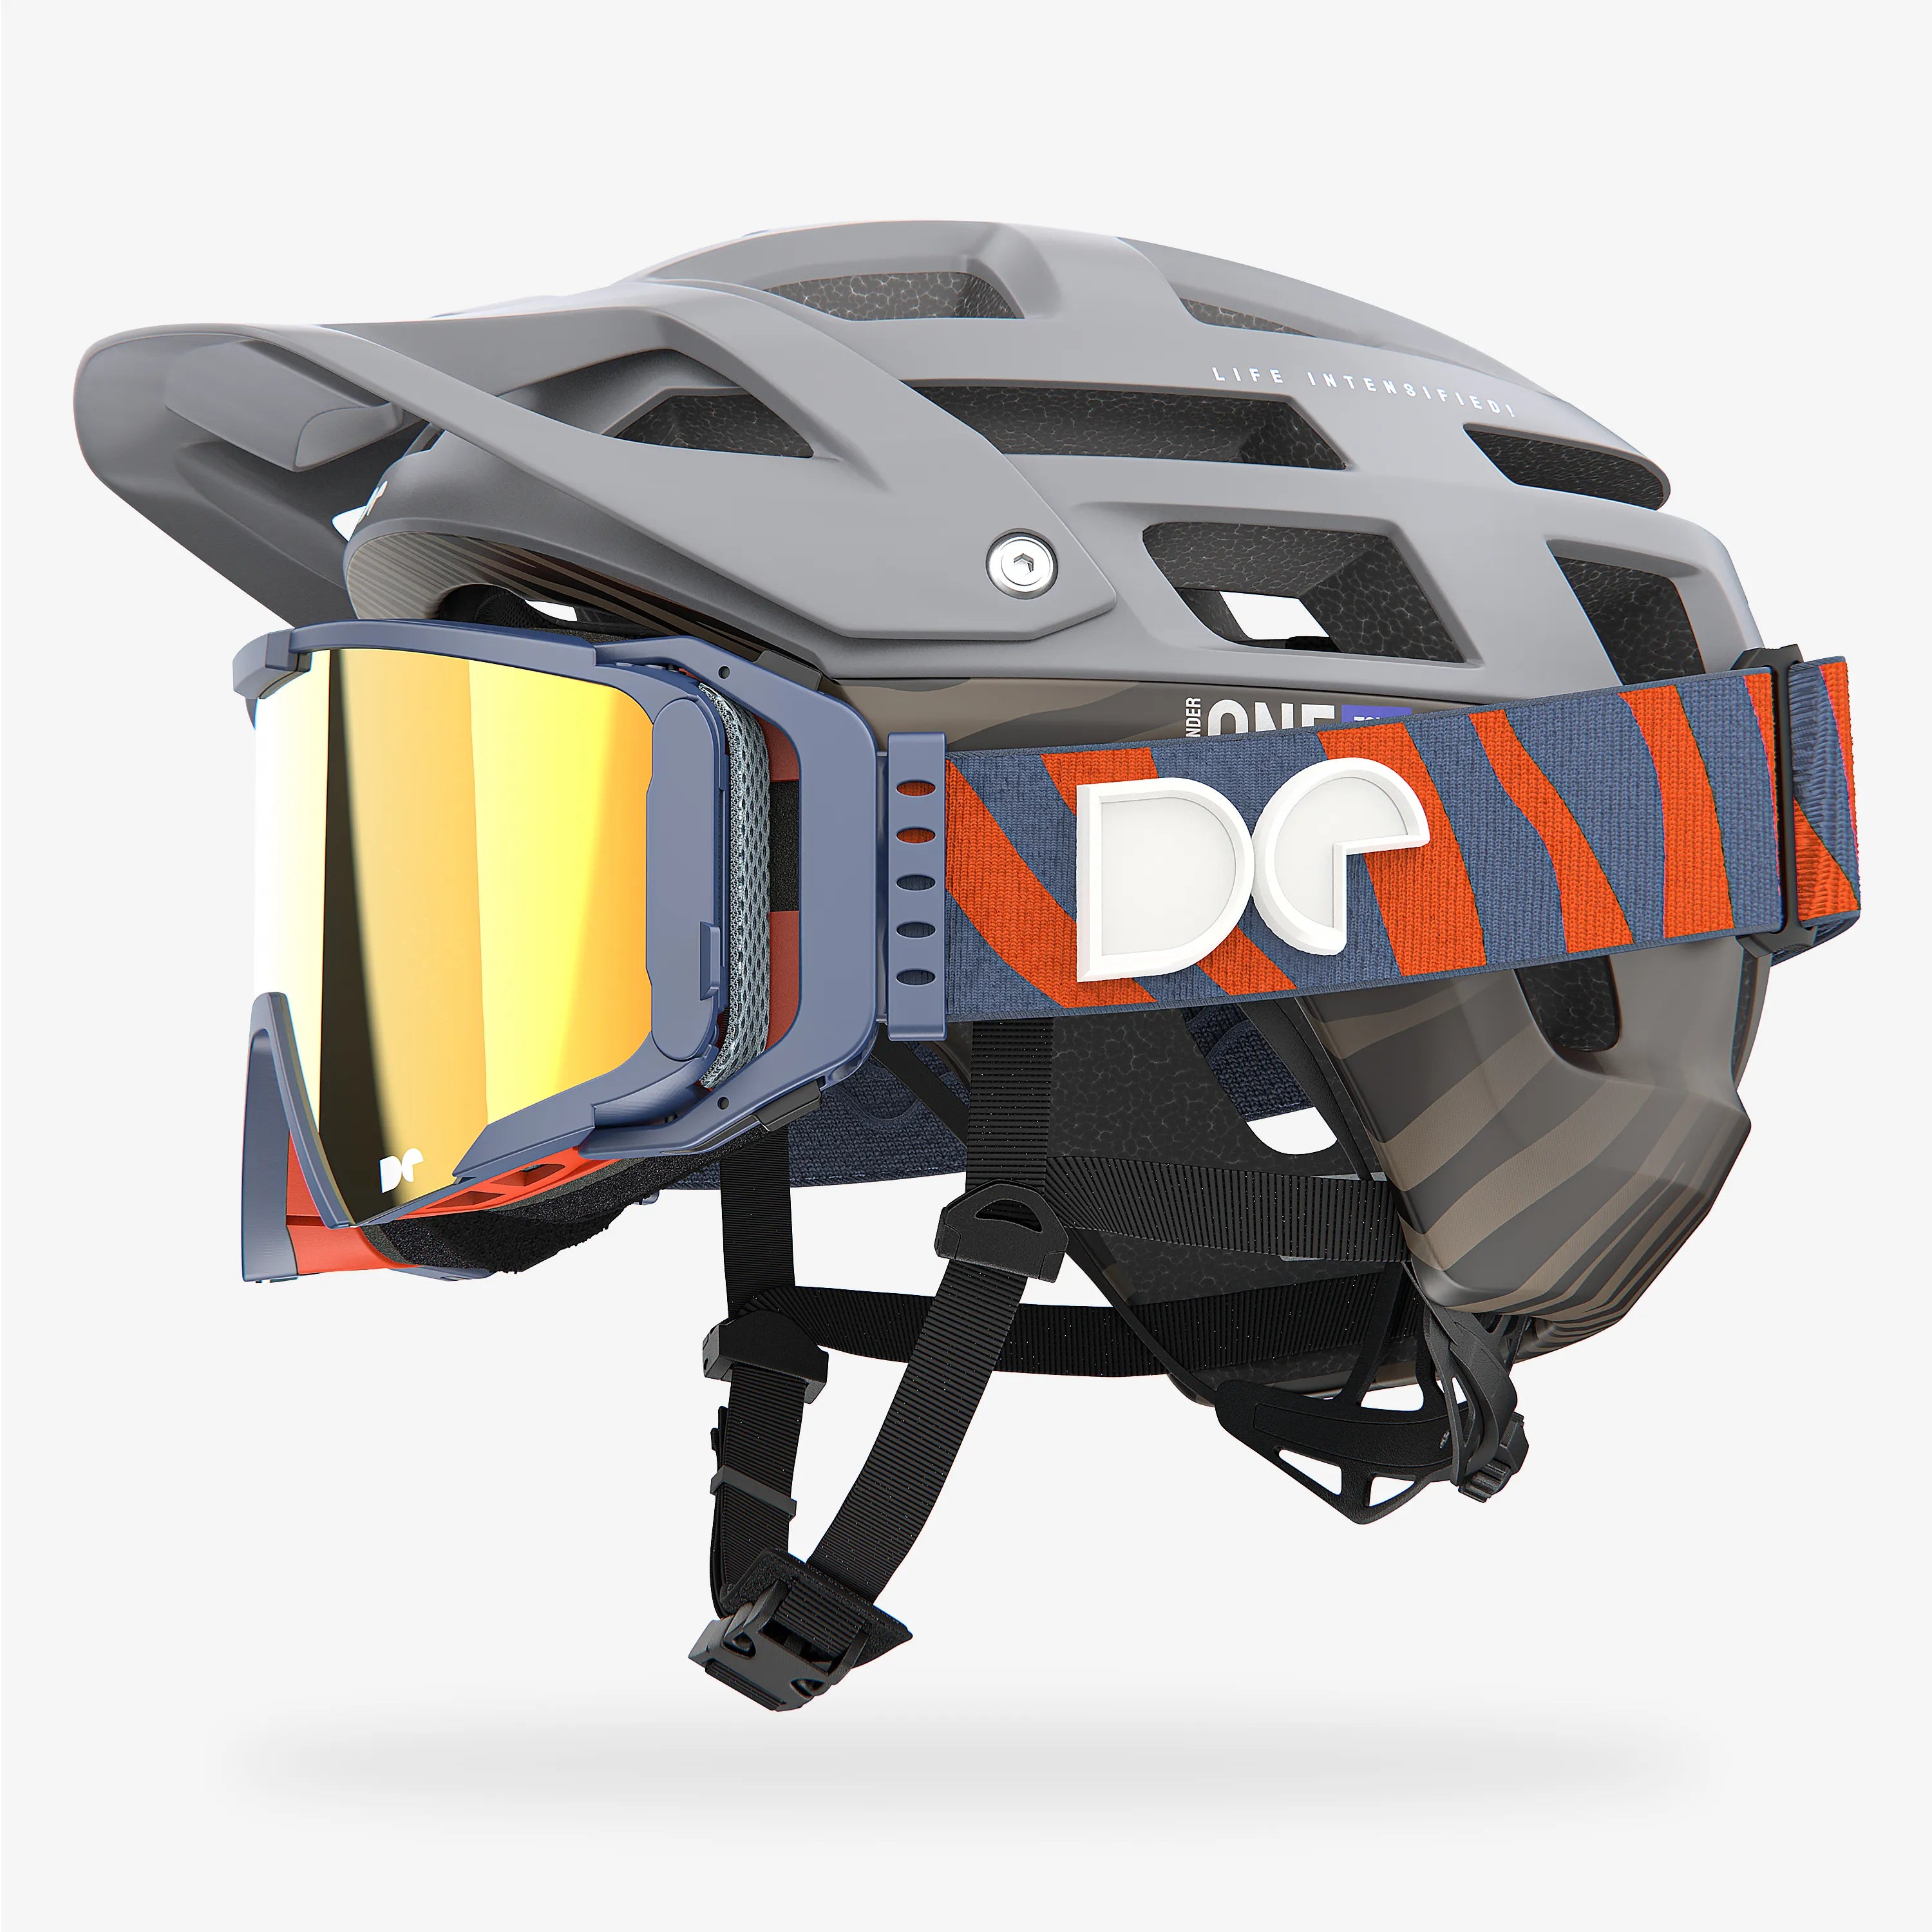 Casco de bicicleta de montaña Defender One Tour Nardo gris + gafas Sporter Boostup All Road